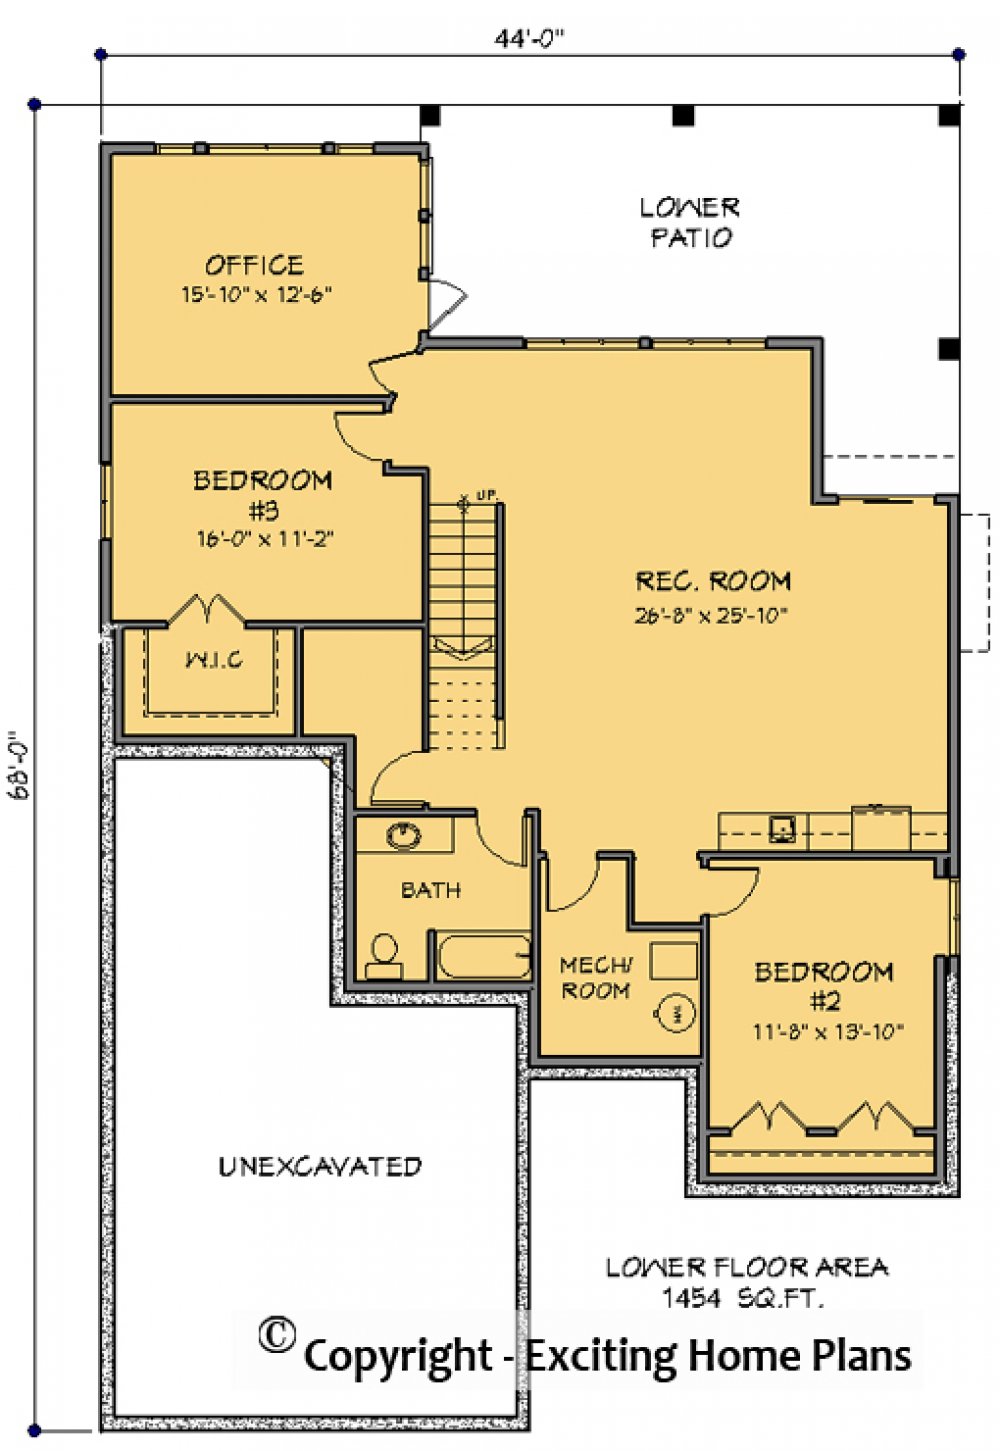 House Plan E1699-10 Lower Floor Plan